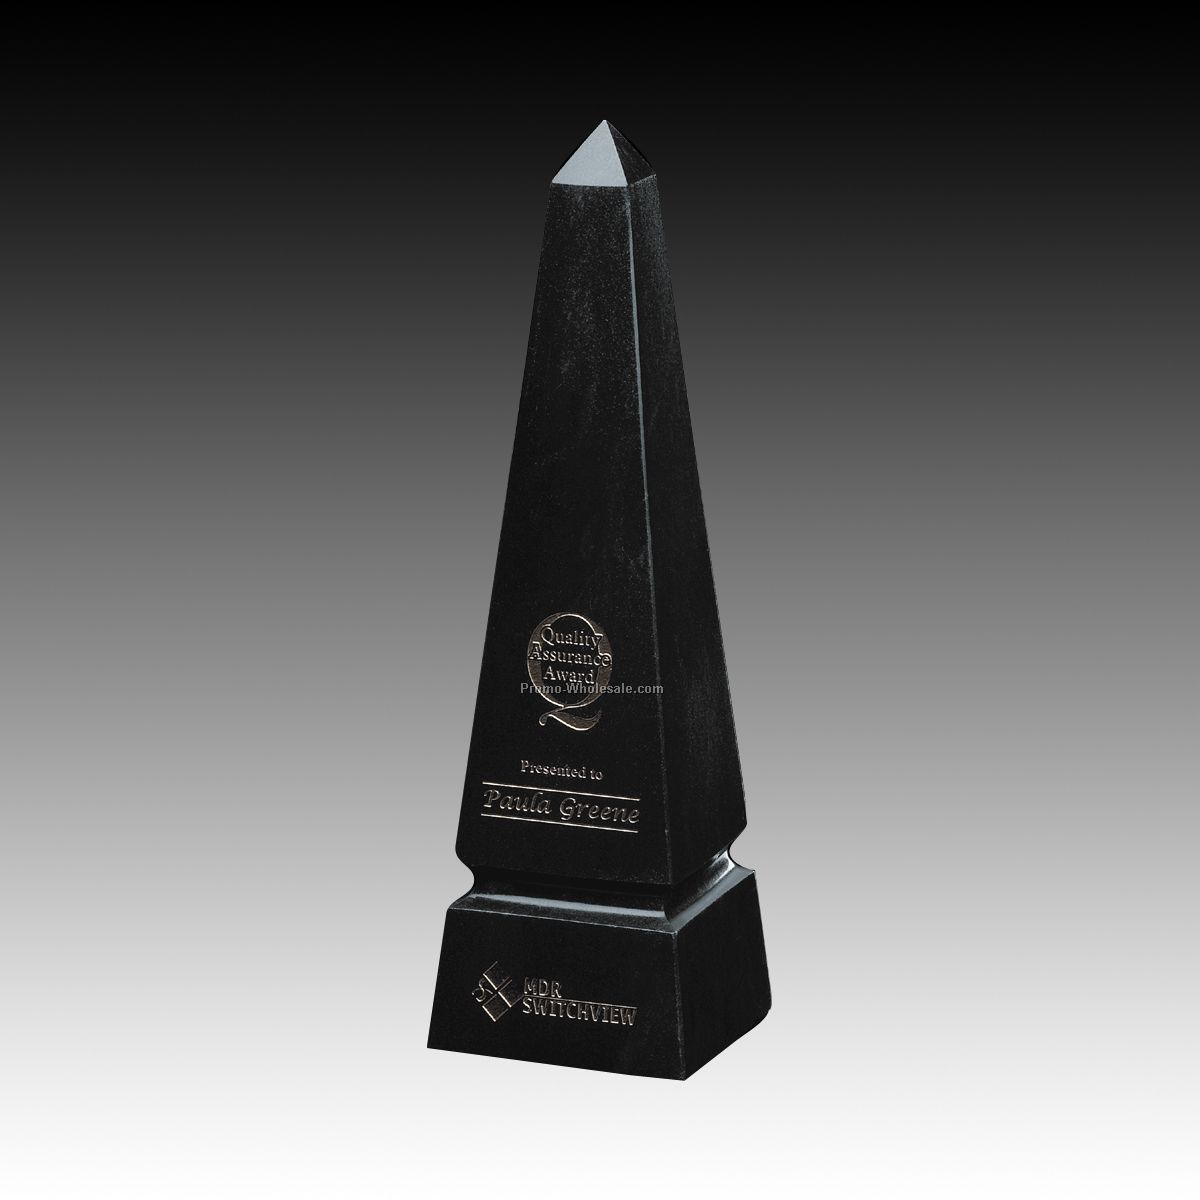 2-1/2"x8" Grooved Obelisk Award